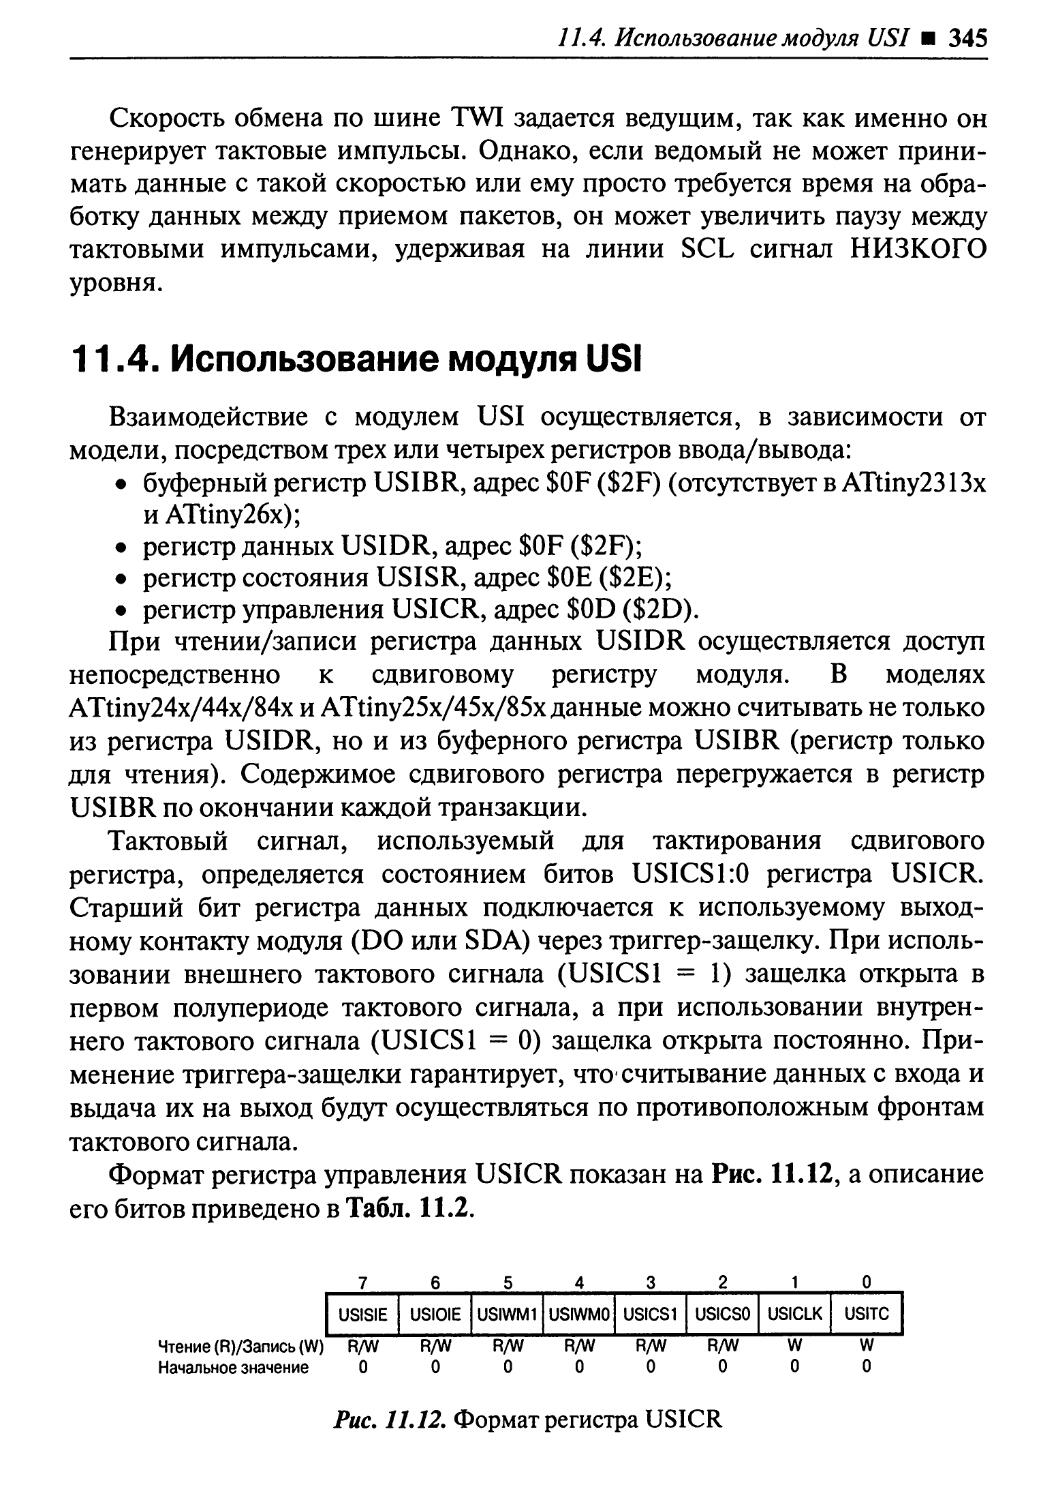 11.4. Использование модуля USI